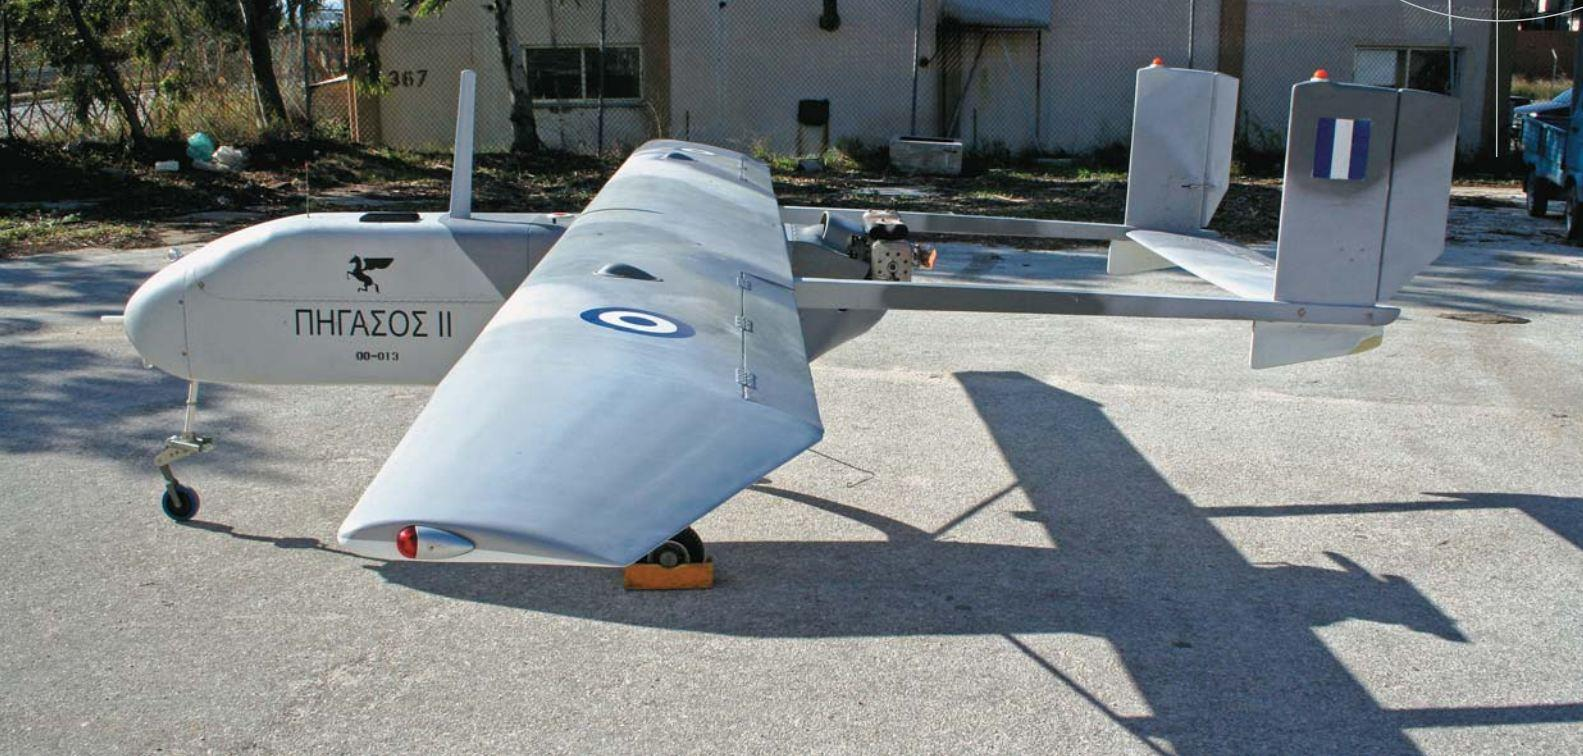 6,5 μέτρων και συνολικού βάρους, συμπεριλαμβανομένων καυσίμων και αισθητήρων 250 κιλών. Το ελληνικό UAV κατασκευάζεται απο σύνθετα υλικά του Τμήματος Συνθετικών Υλικών του ΚΕΑ.